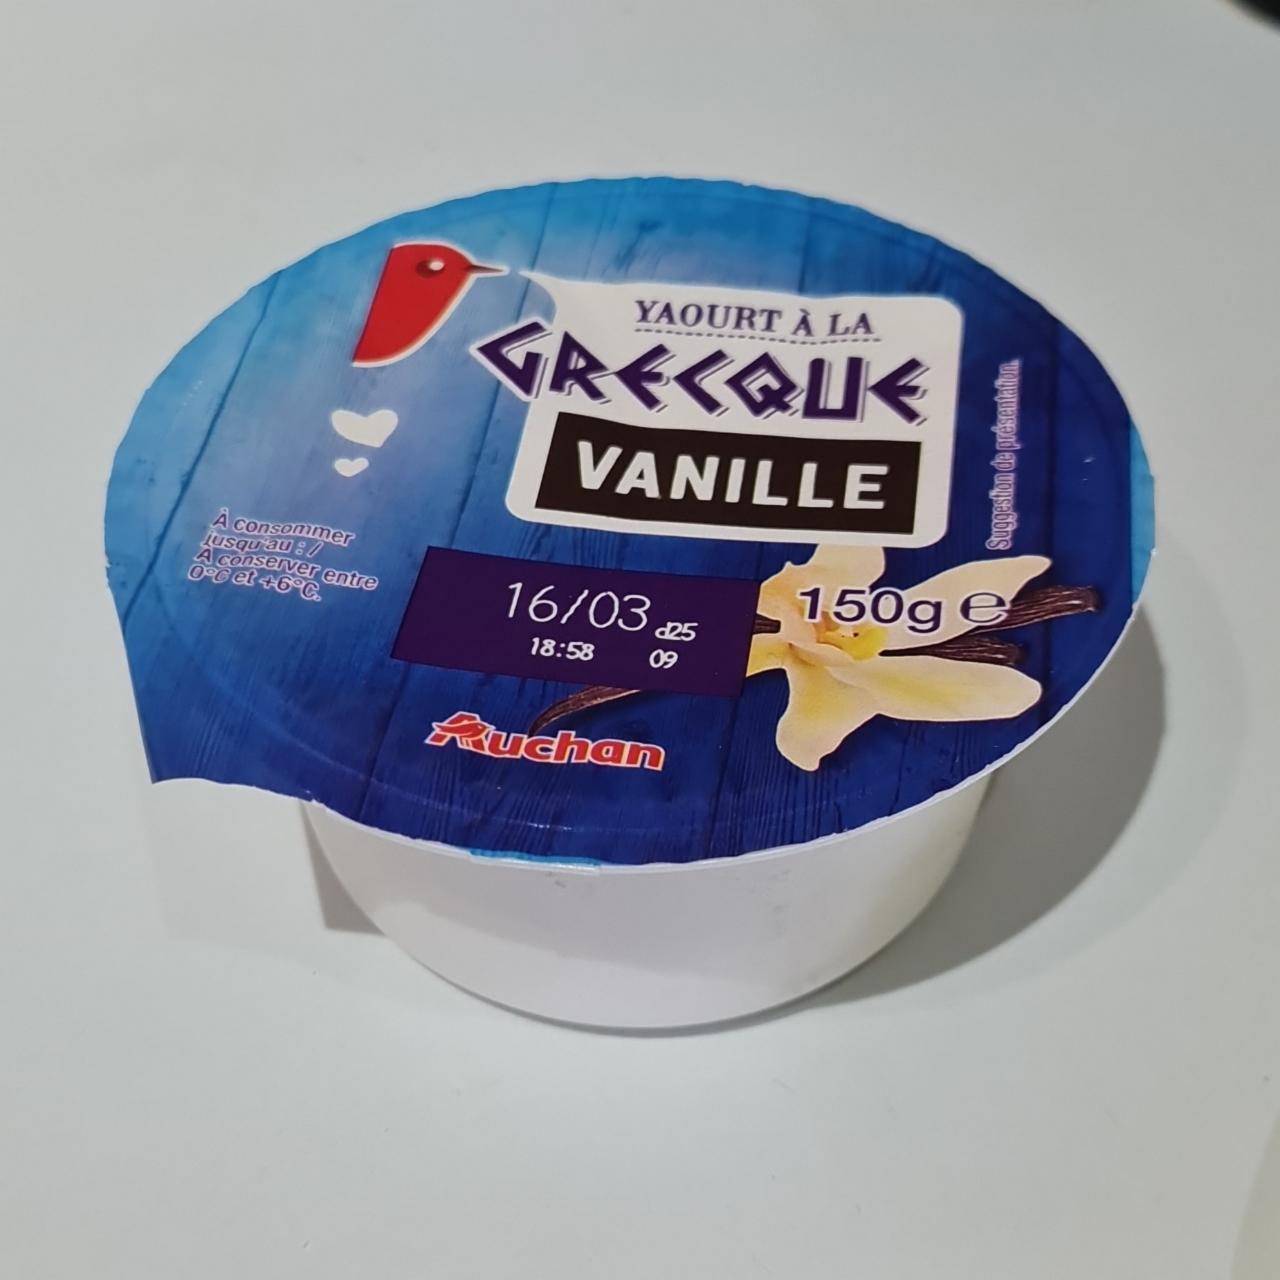 Képek - Yaourt á la Grecque vanille Auchan